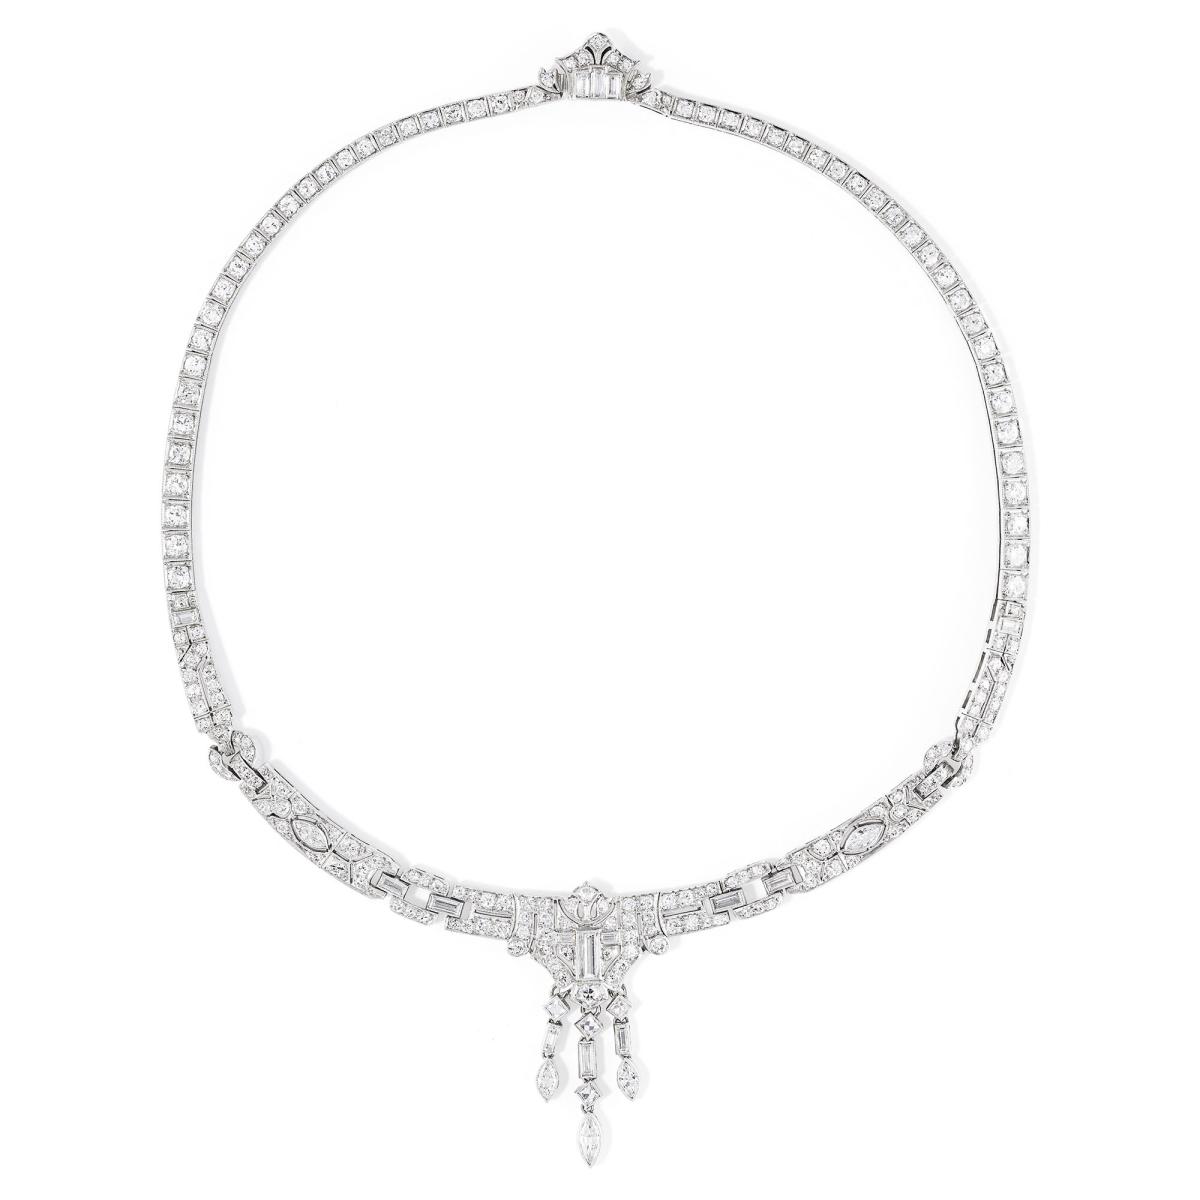 Art Deco brilliant, baguette and navette cut diamond necklace